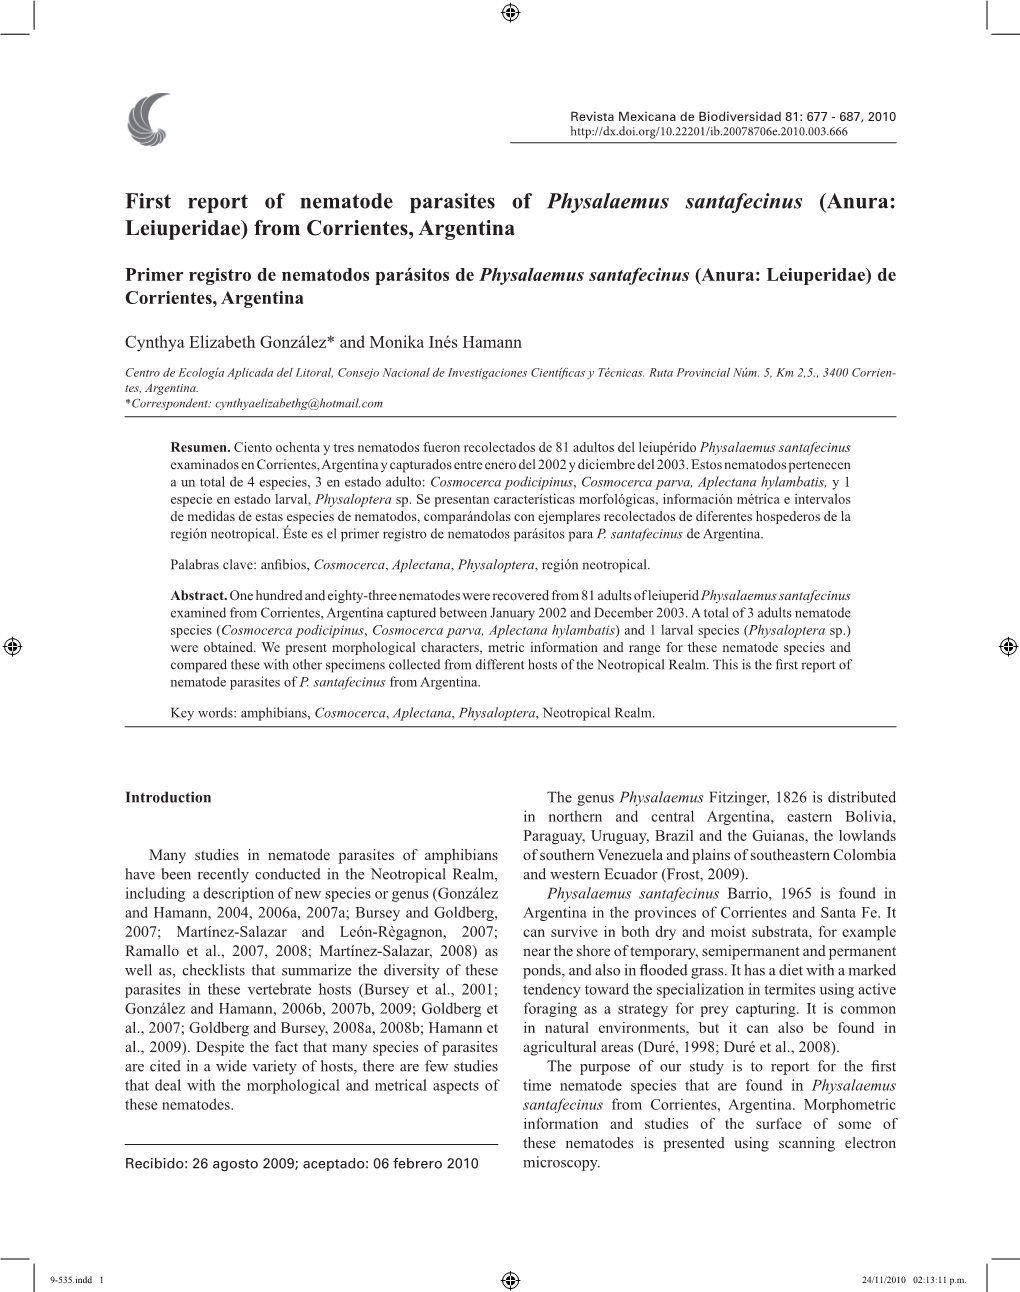 First Report of Nematode Parasites of Physalaemus Santafecinus (Anura: Leiuperidae) from Corrientes, Argentina